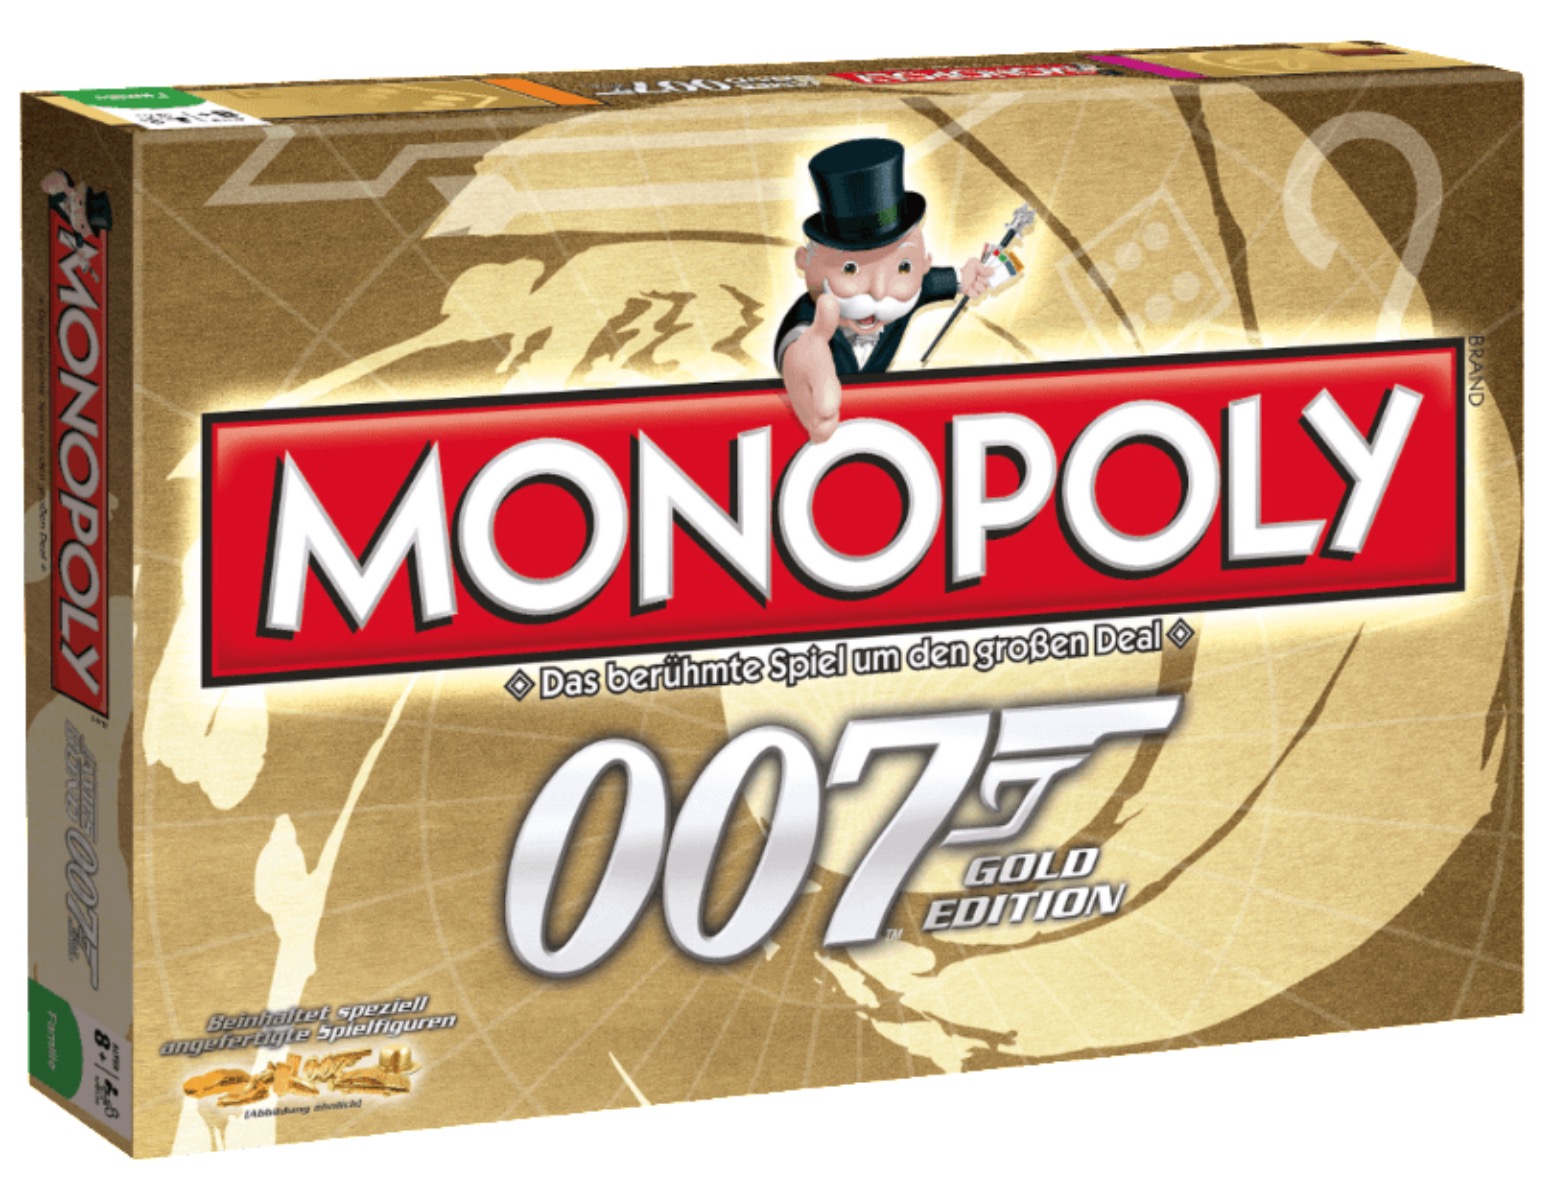 Monopoly in der James Bond Limited Gold Edition für nur 19,99 Euro inkl. Versand